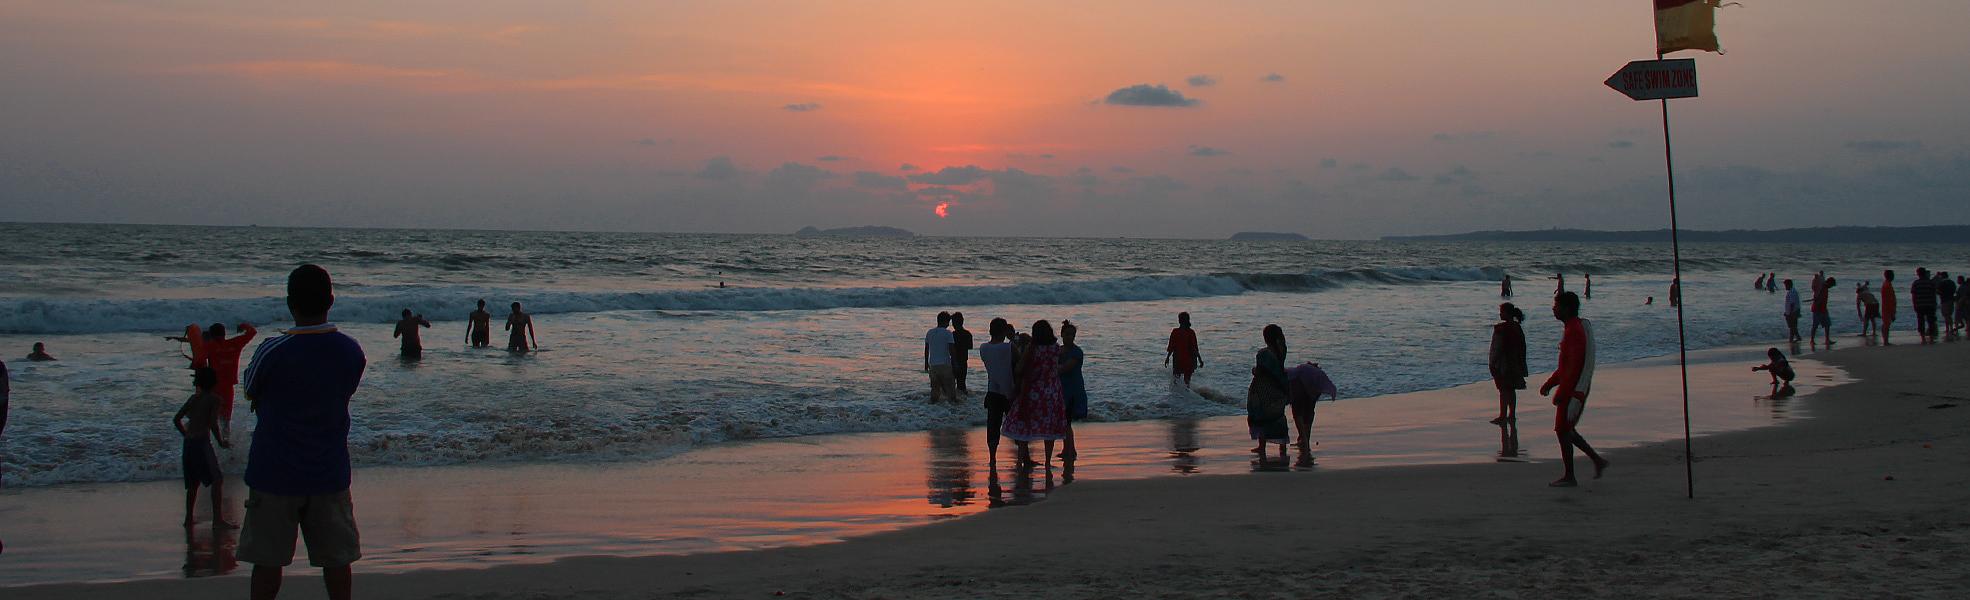 Playa de Goa